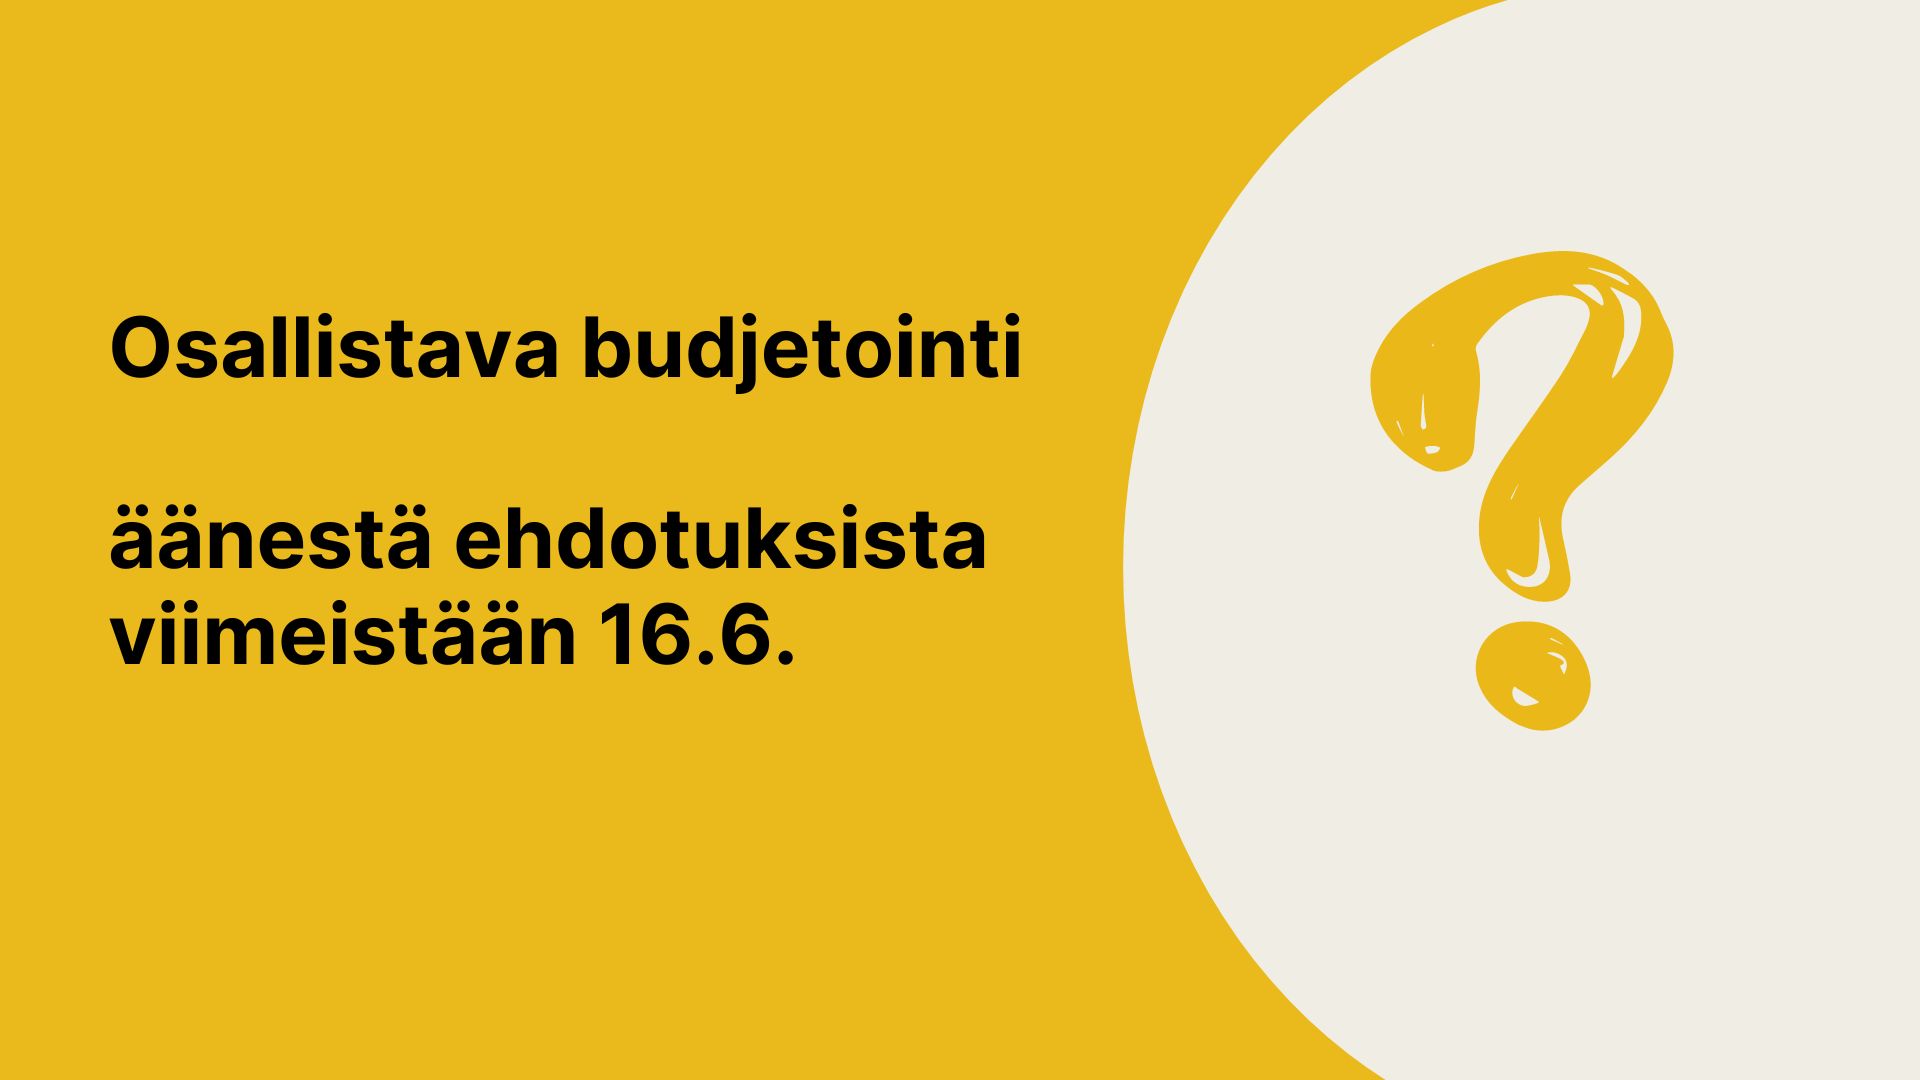 Keltaisella pohjalla vaalea puolipallo ja siinä kysymysmerkki. Keltaisen osa päällä teksti: Osallistava budjetointi äänestä ehdotuksista viimeistään 16.6.